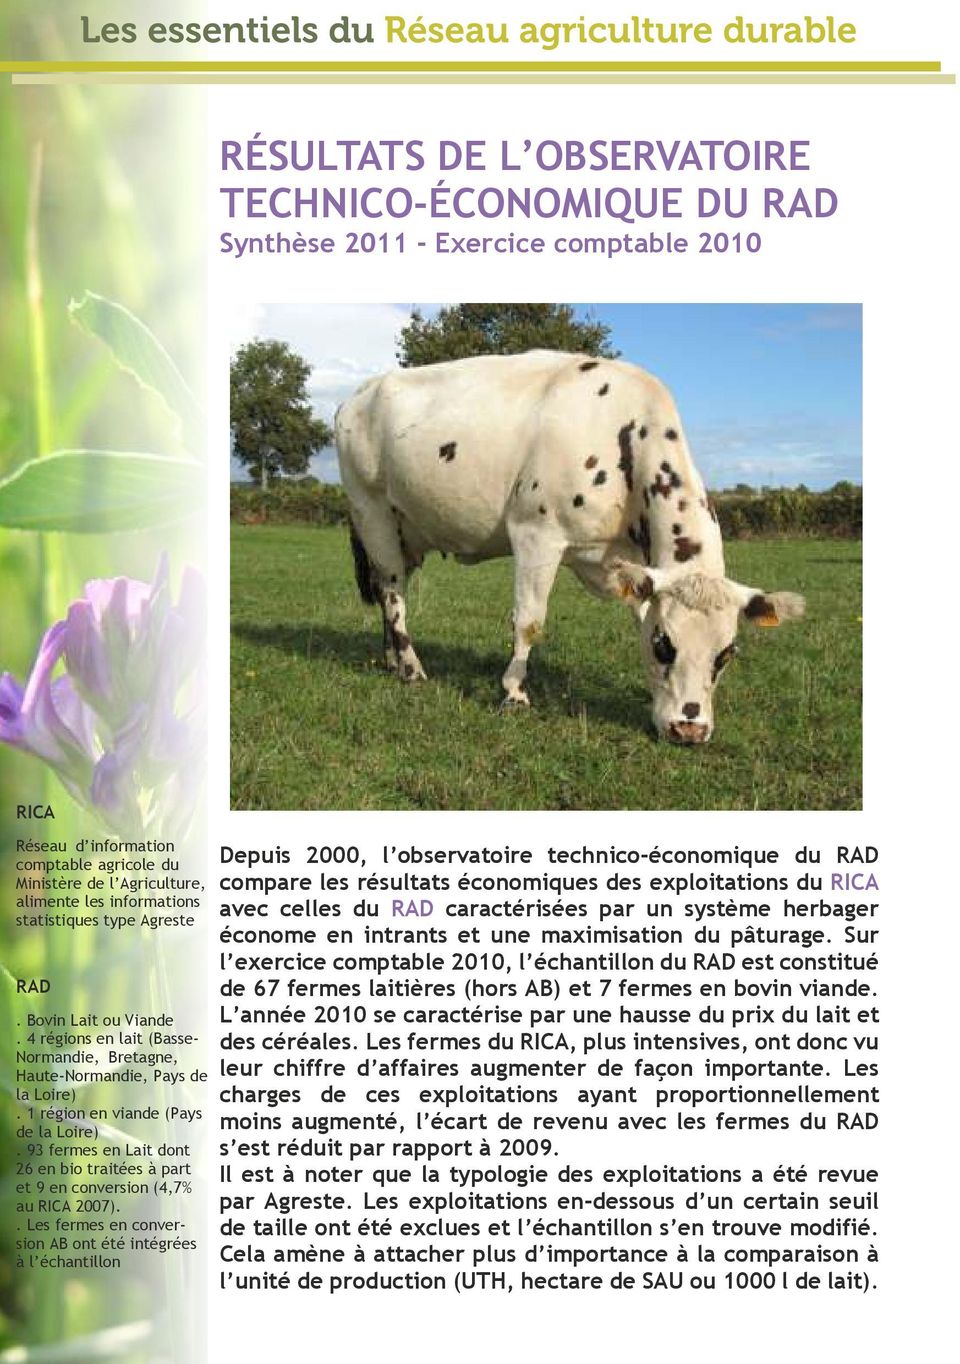 1 région en viande (Pays de la Loire). 93 fermes en Lait dont 26 en bio traitées à part et 9 en conversion (4,7% au 2007).